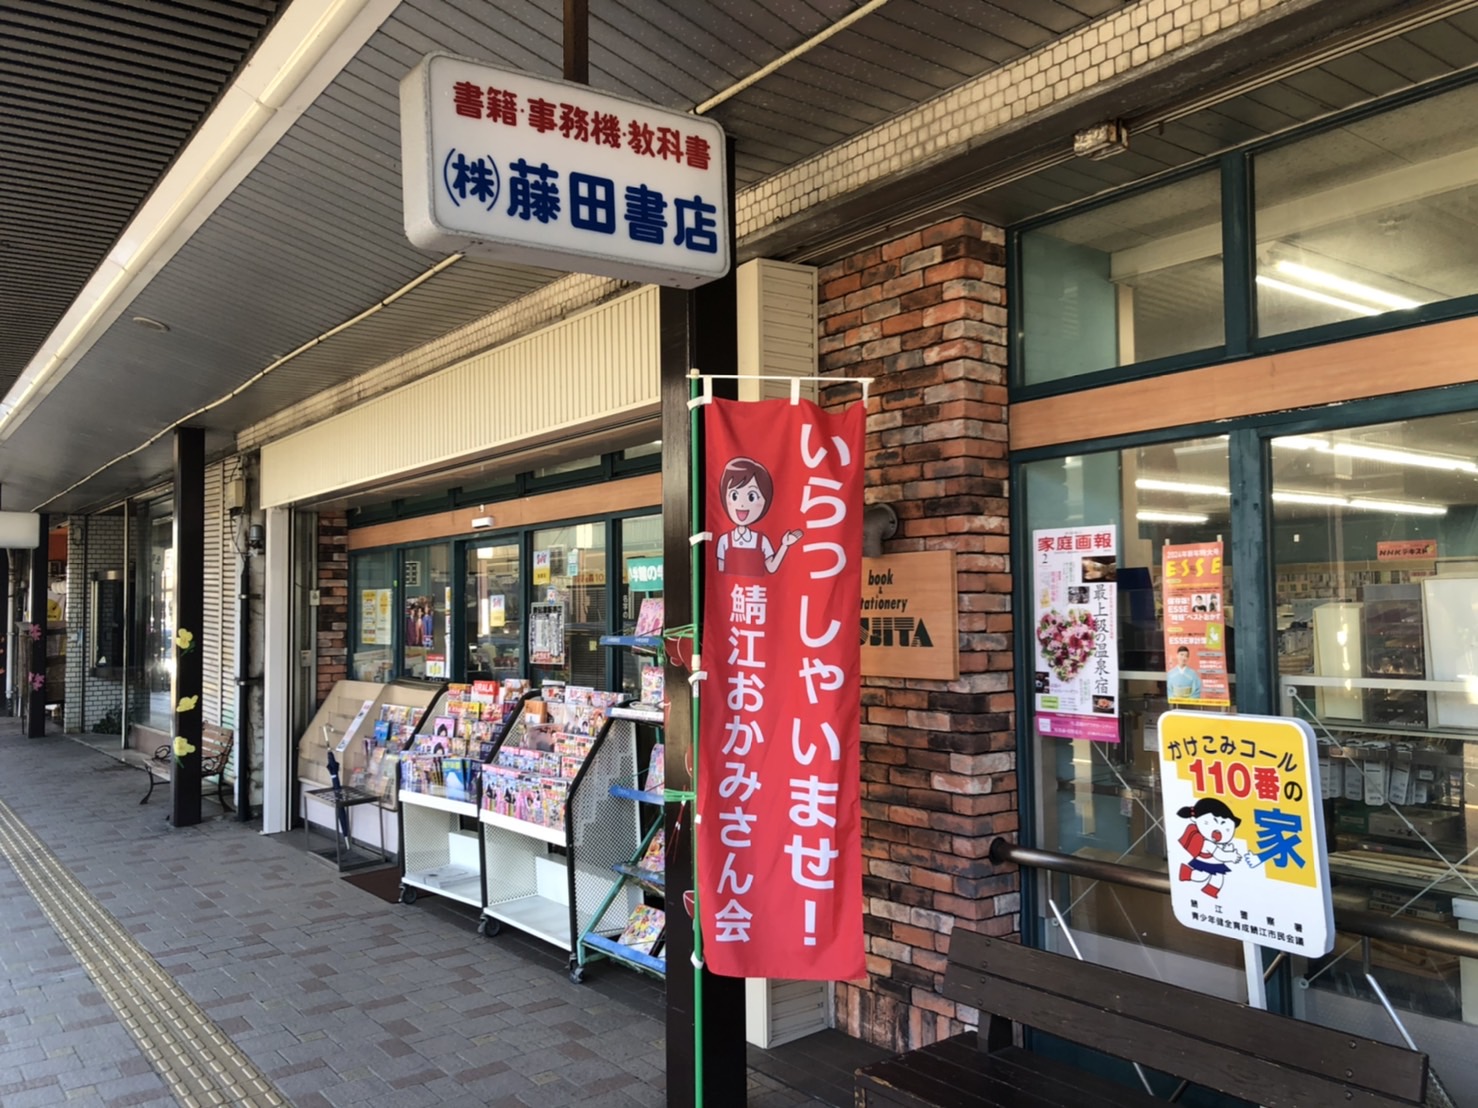 【書店ルポ】福井駅前の画像